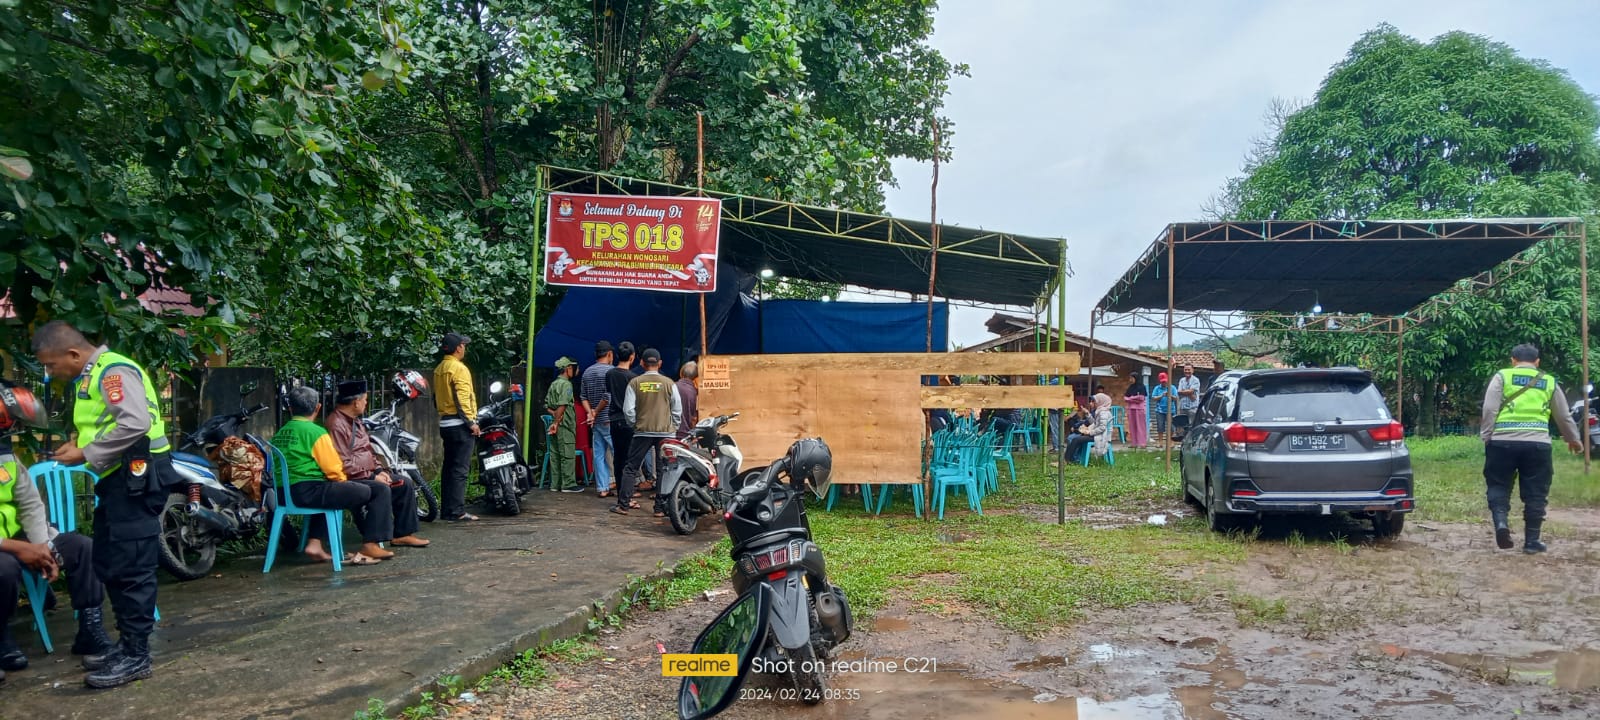 Soal PSU TPS 18 Wonosari Kota Prabumulih, KPU: Jika Terbukti Ada Kelalaian, Bakal Diberikan Sanksi